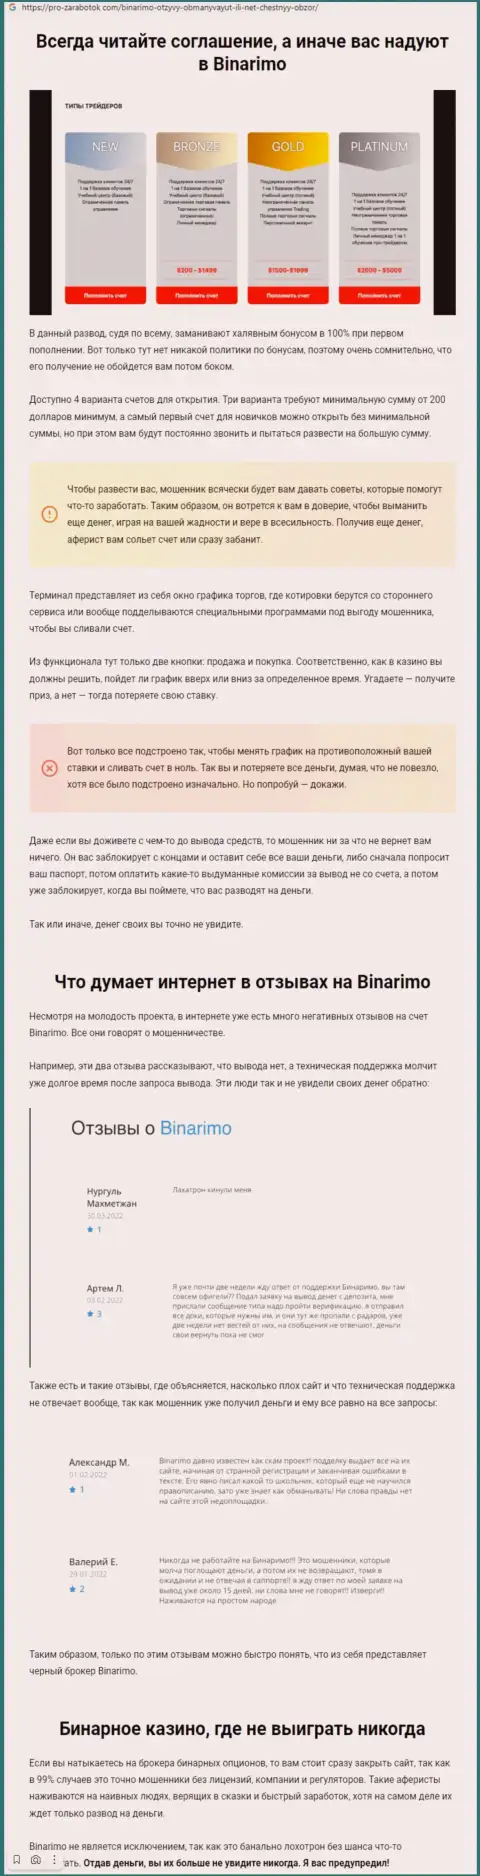 Binarimo - это жулики, которым денежные средства доверять не нужно ни в коем случае (обзор неправомерных деяний)